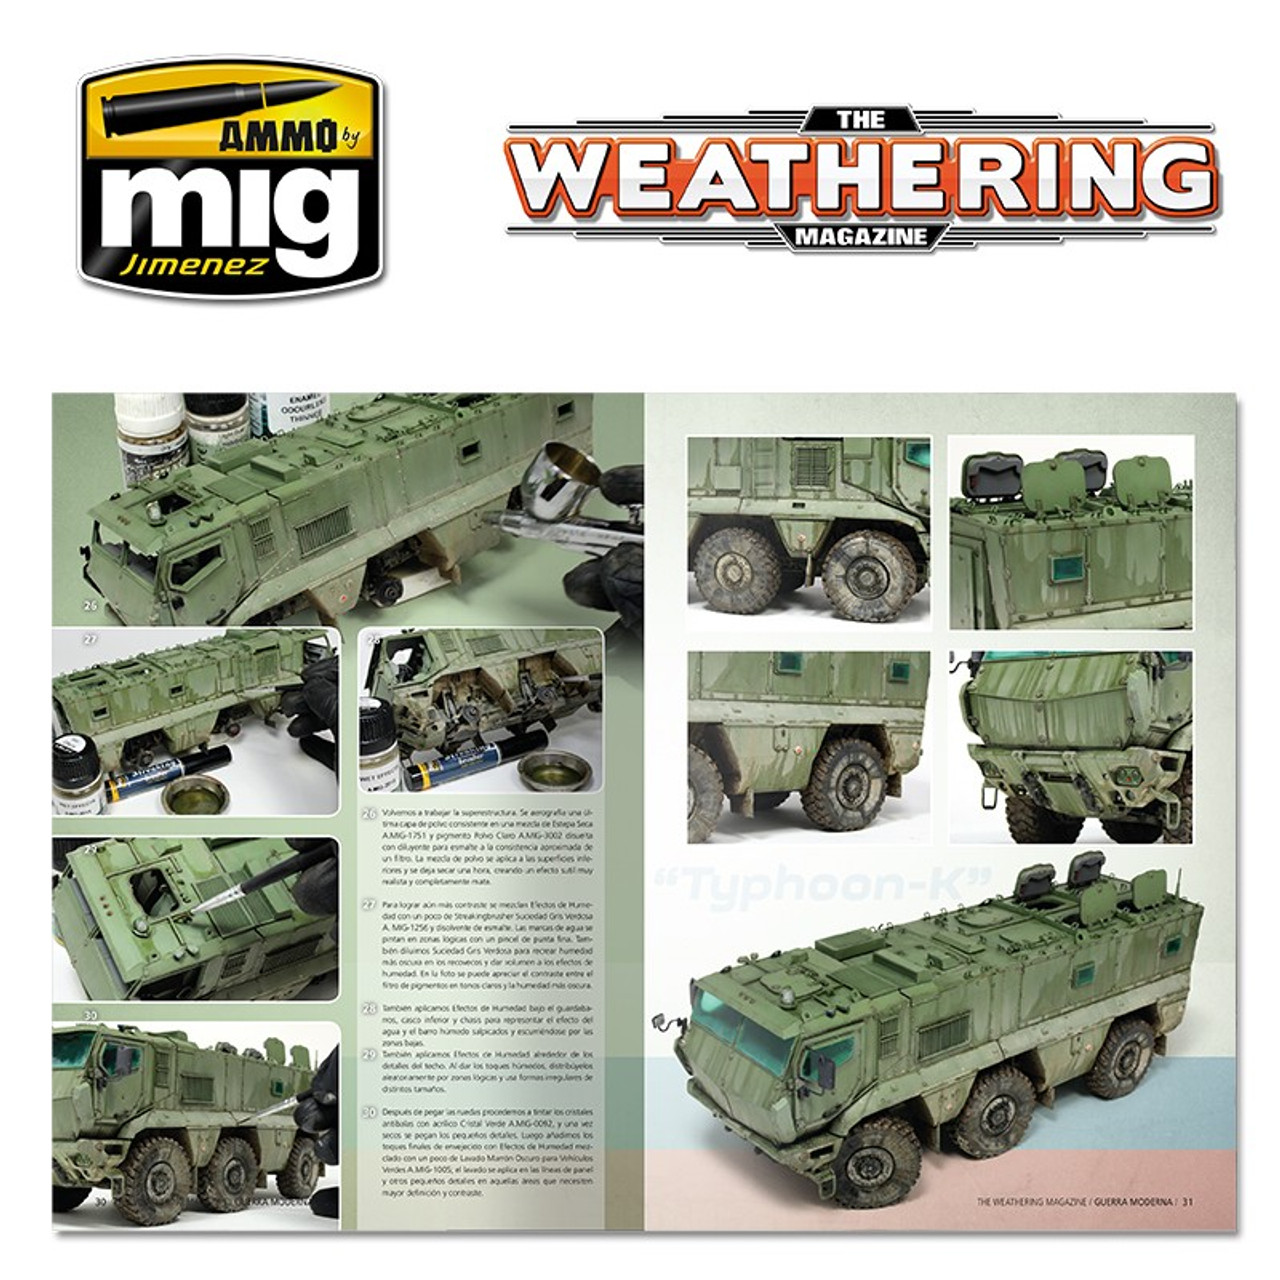 Weathering Magazine 026: Modern Warfare